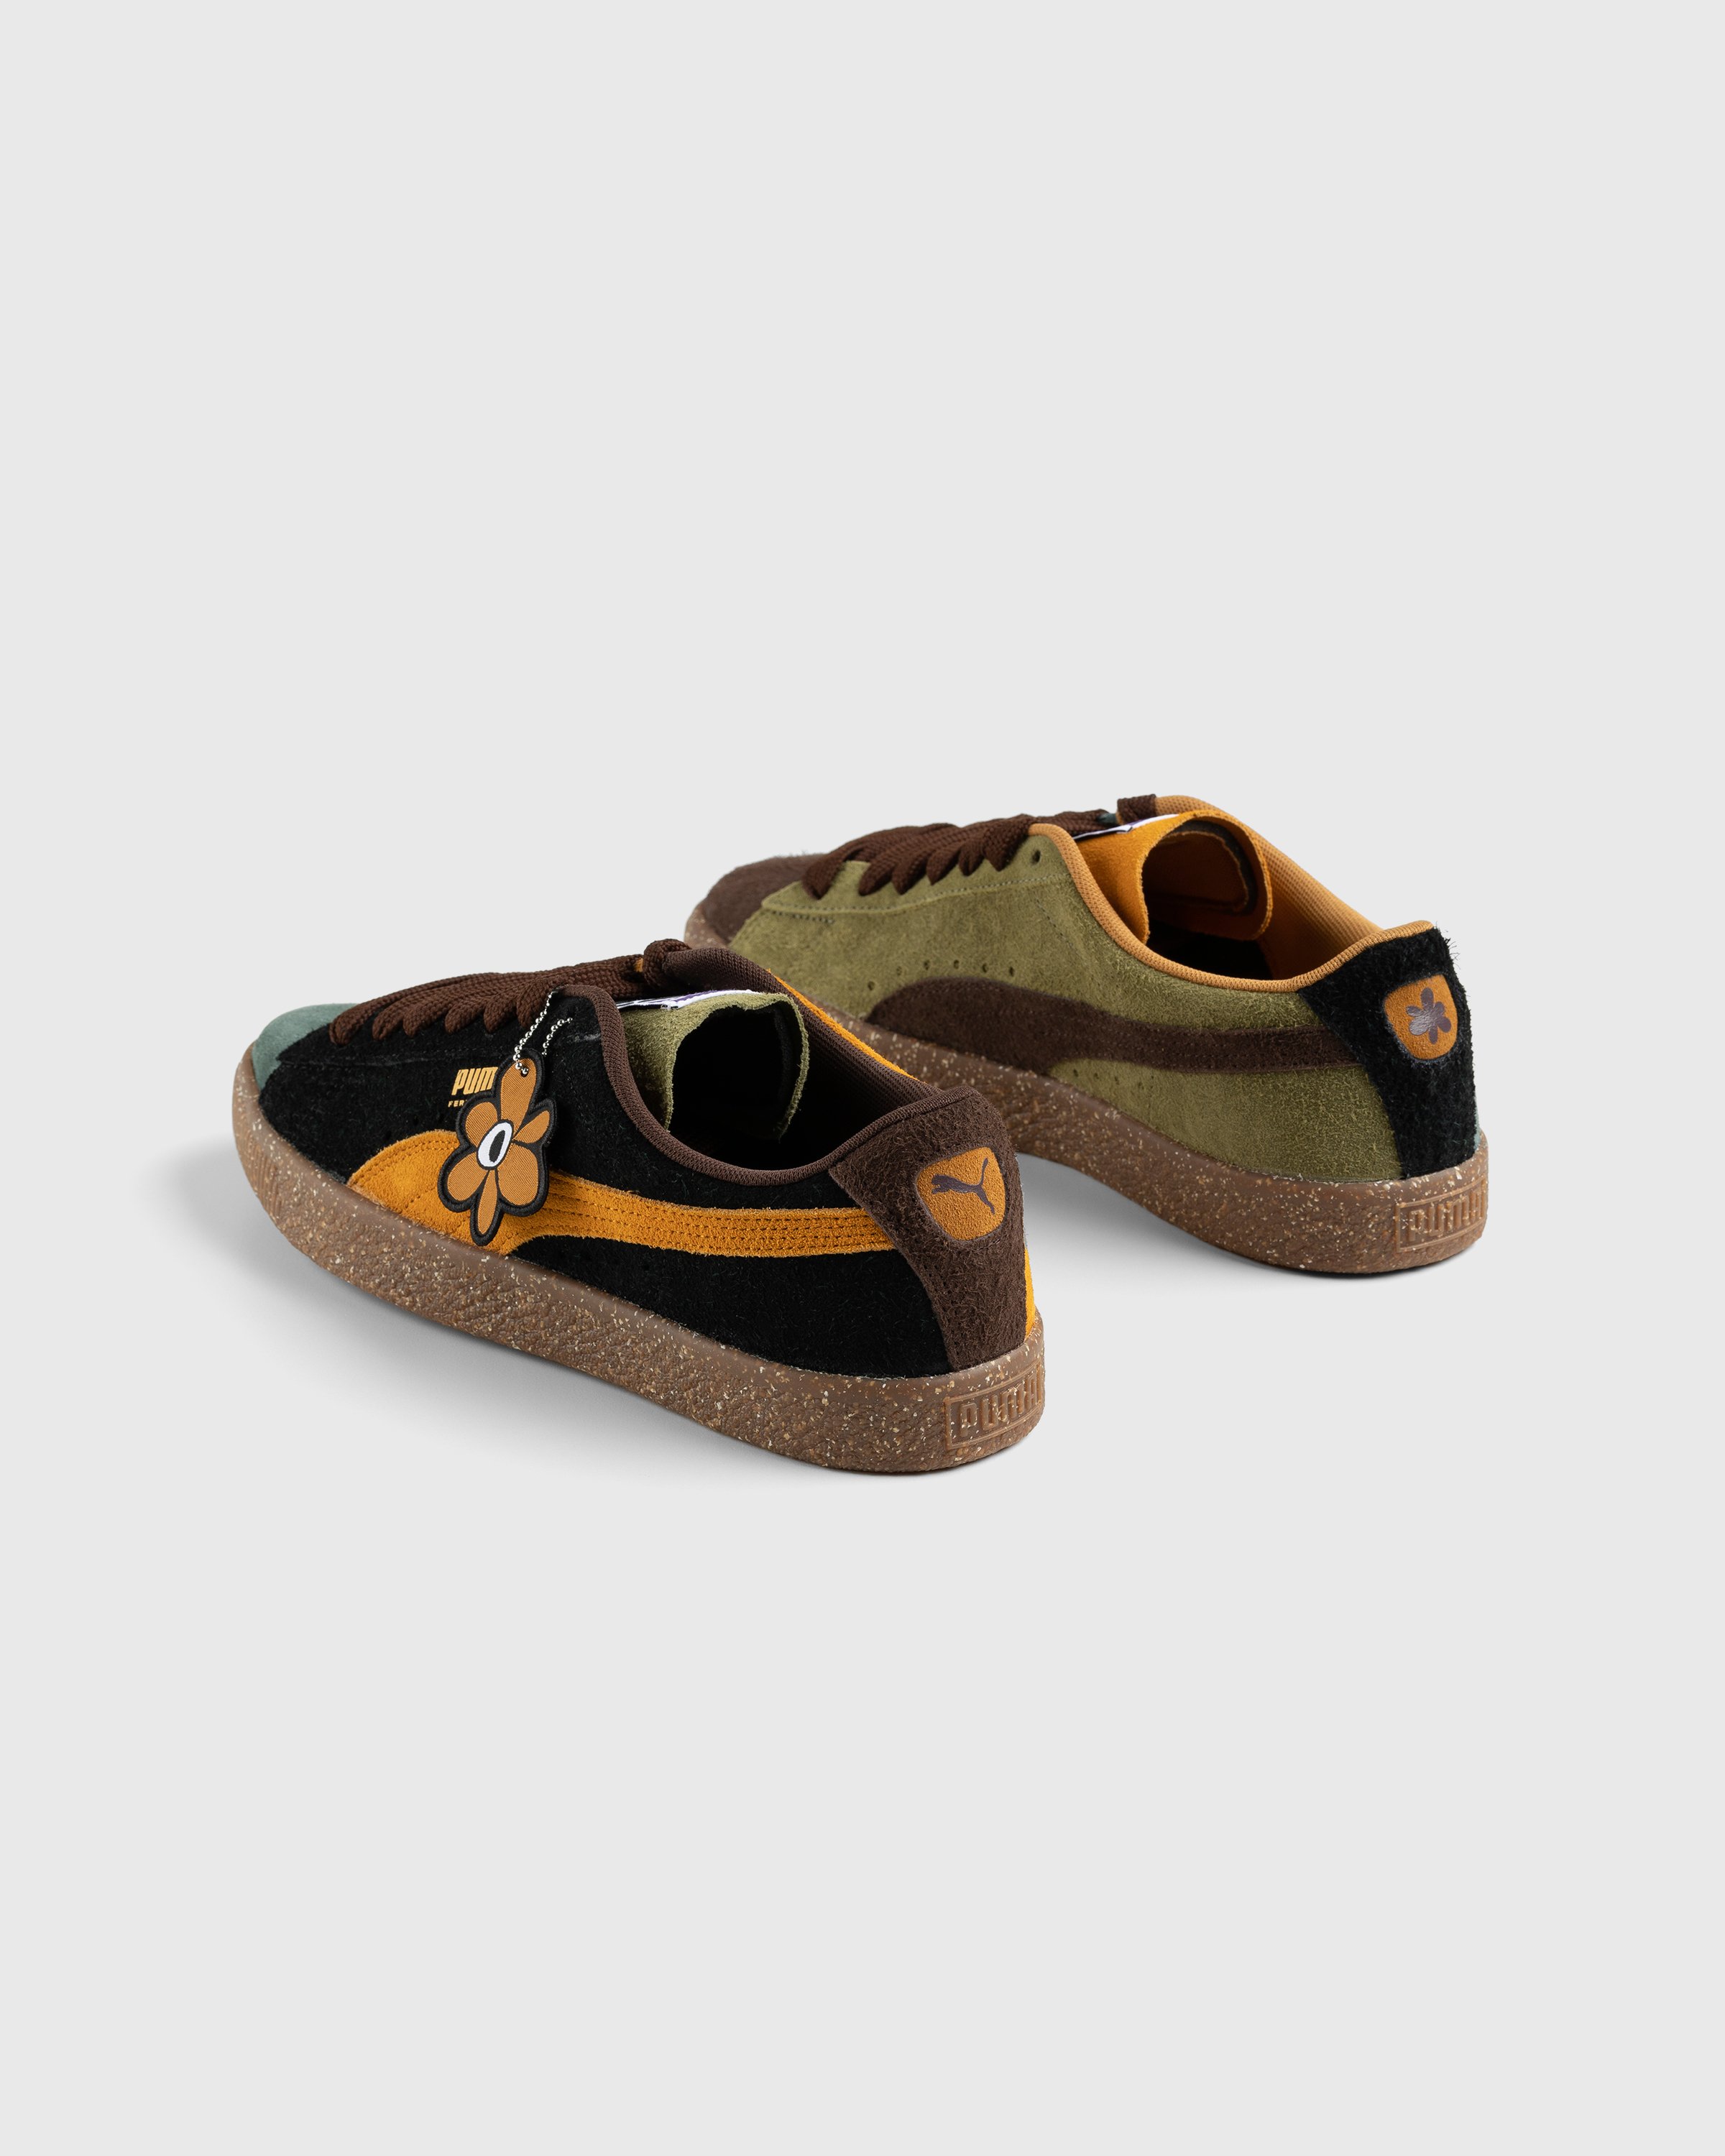 Puma x P.A.M. - Suede Vintage Brown - Footwear - Brown - Image 4